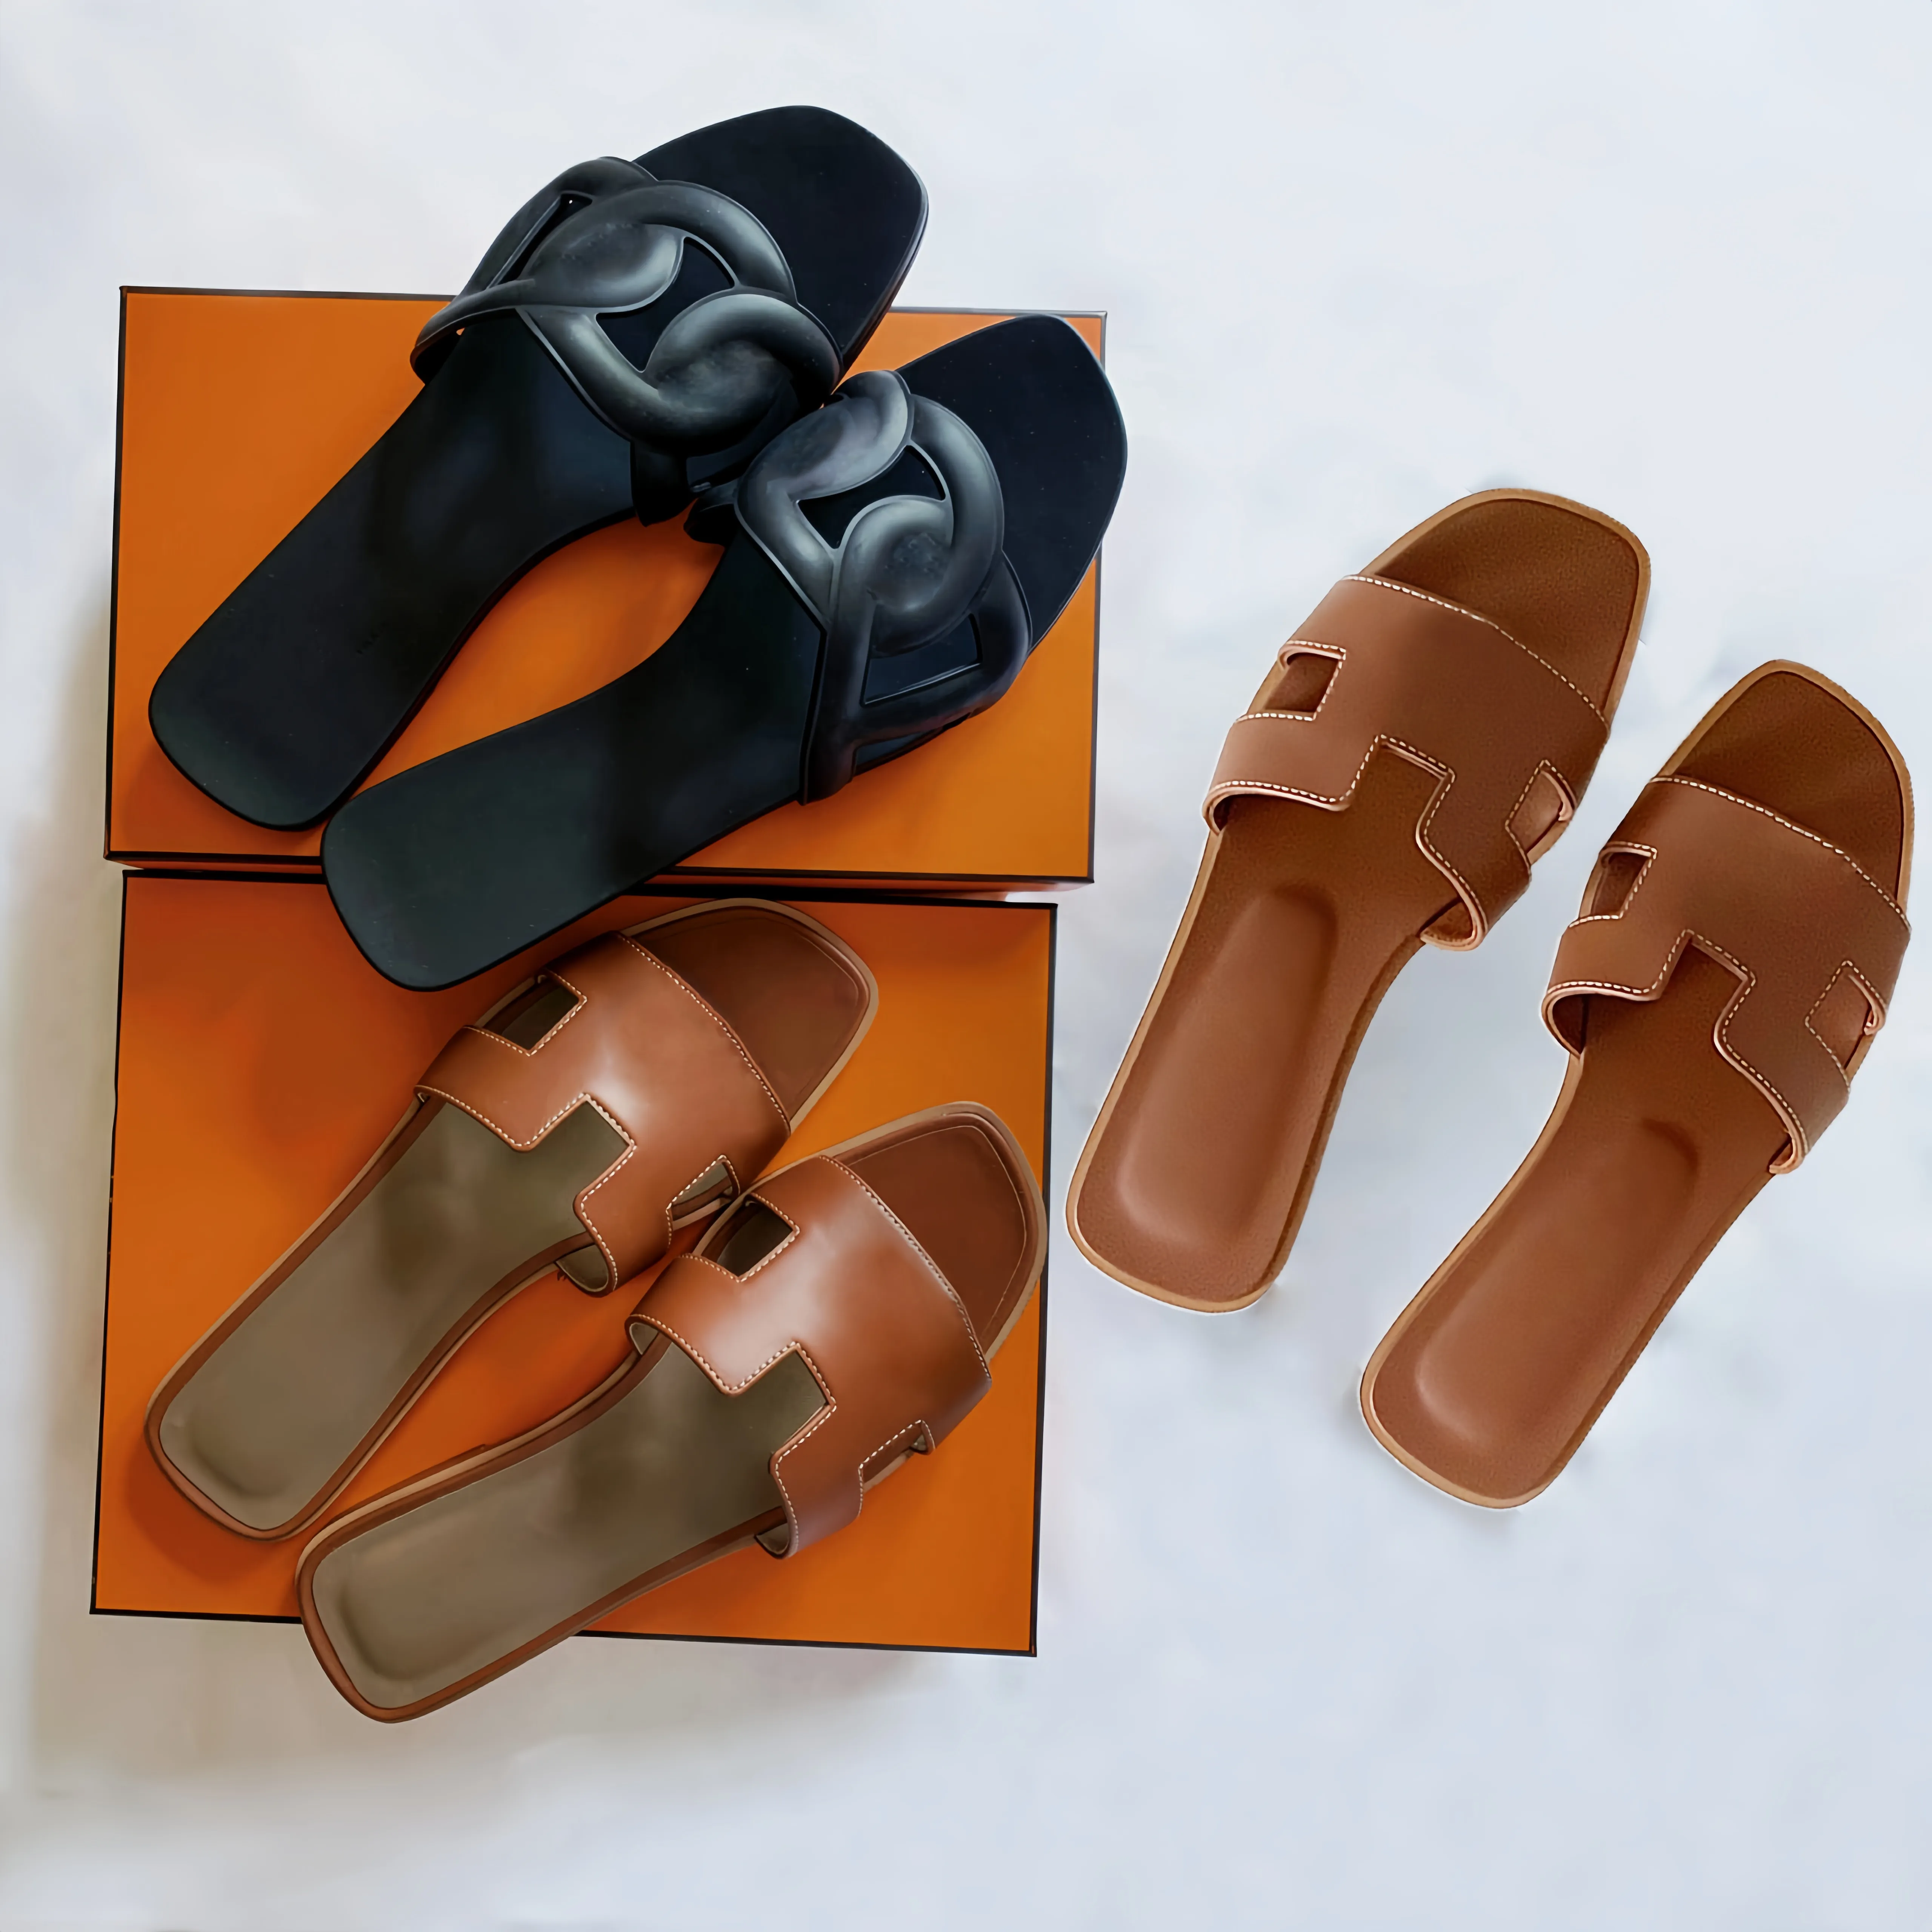 Designer mulheres chinelos de praia sandálias flip flops slides para mulher senhoras verão moda casual luxo clássico couro liso sólido casa mlues sapatos pele laranja 35-42